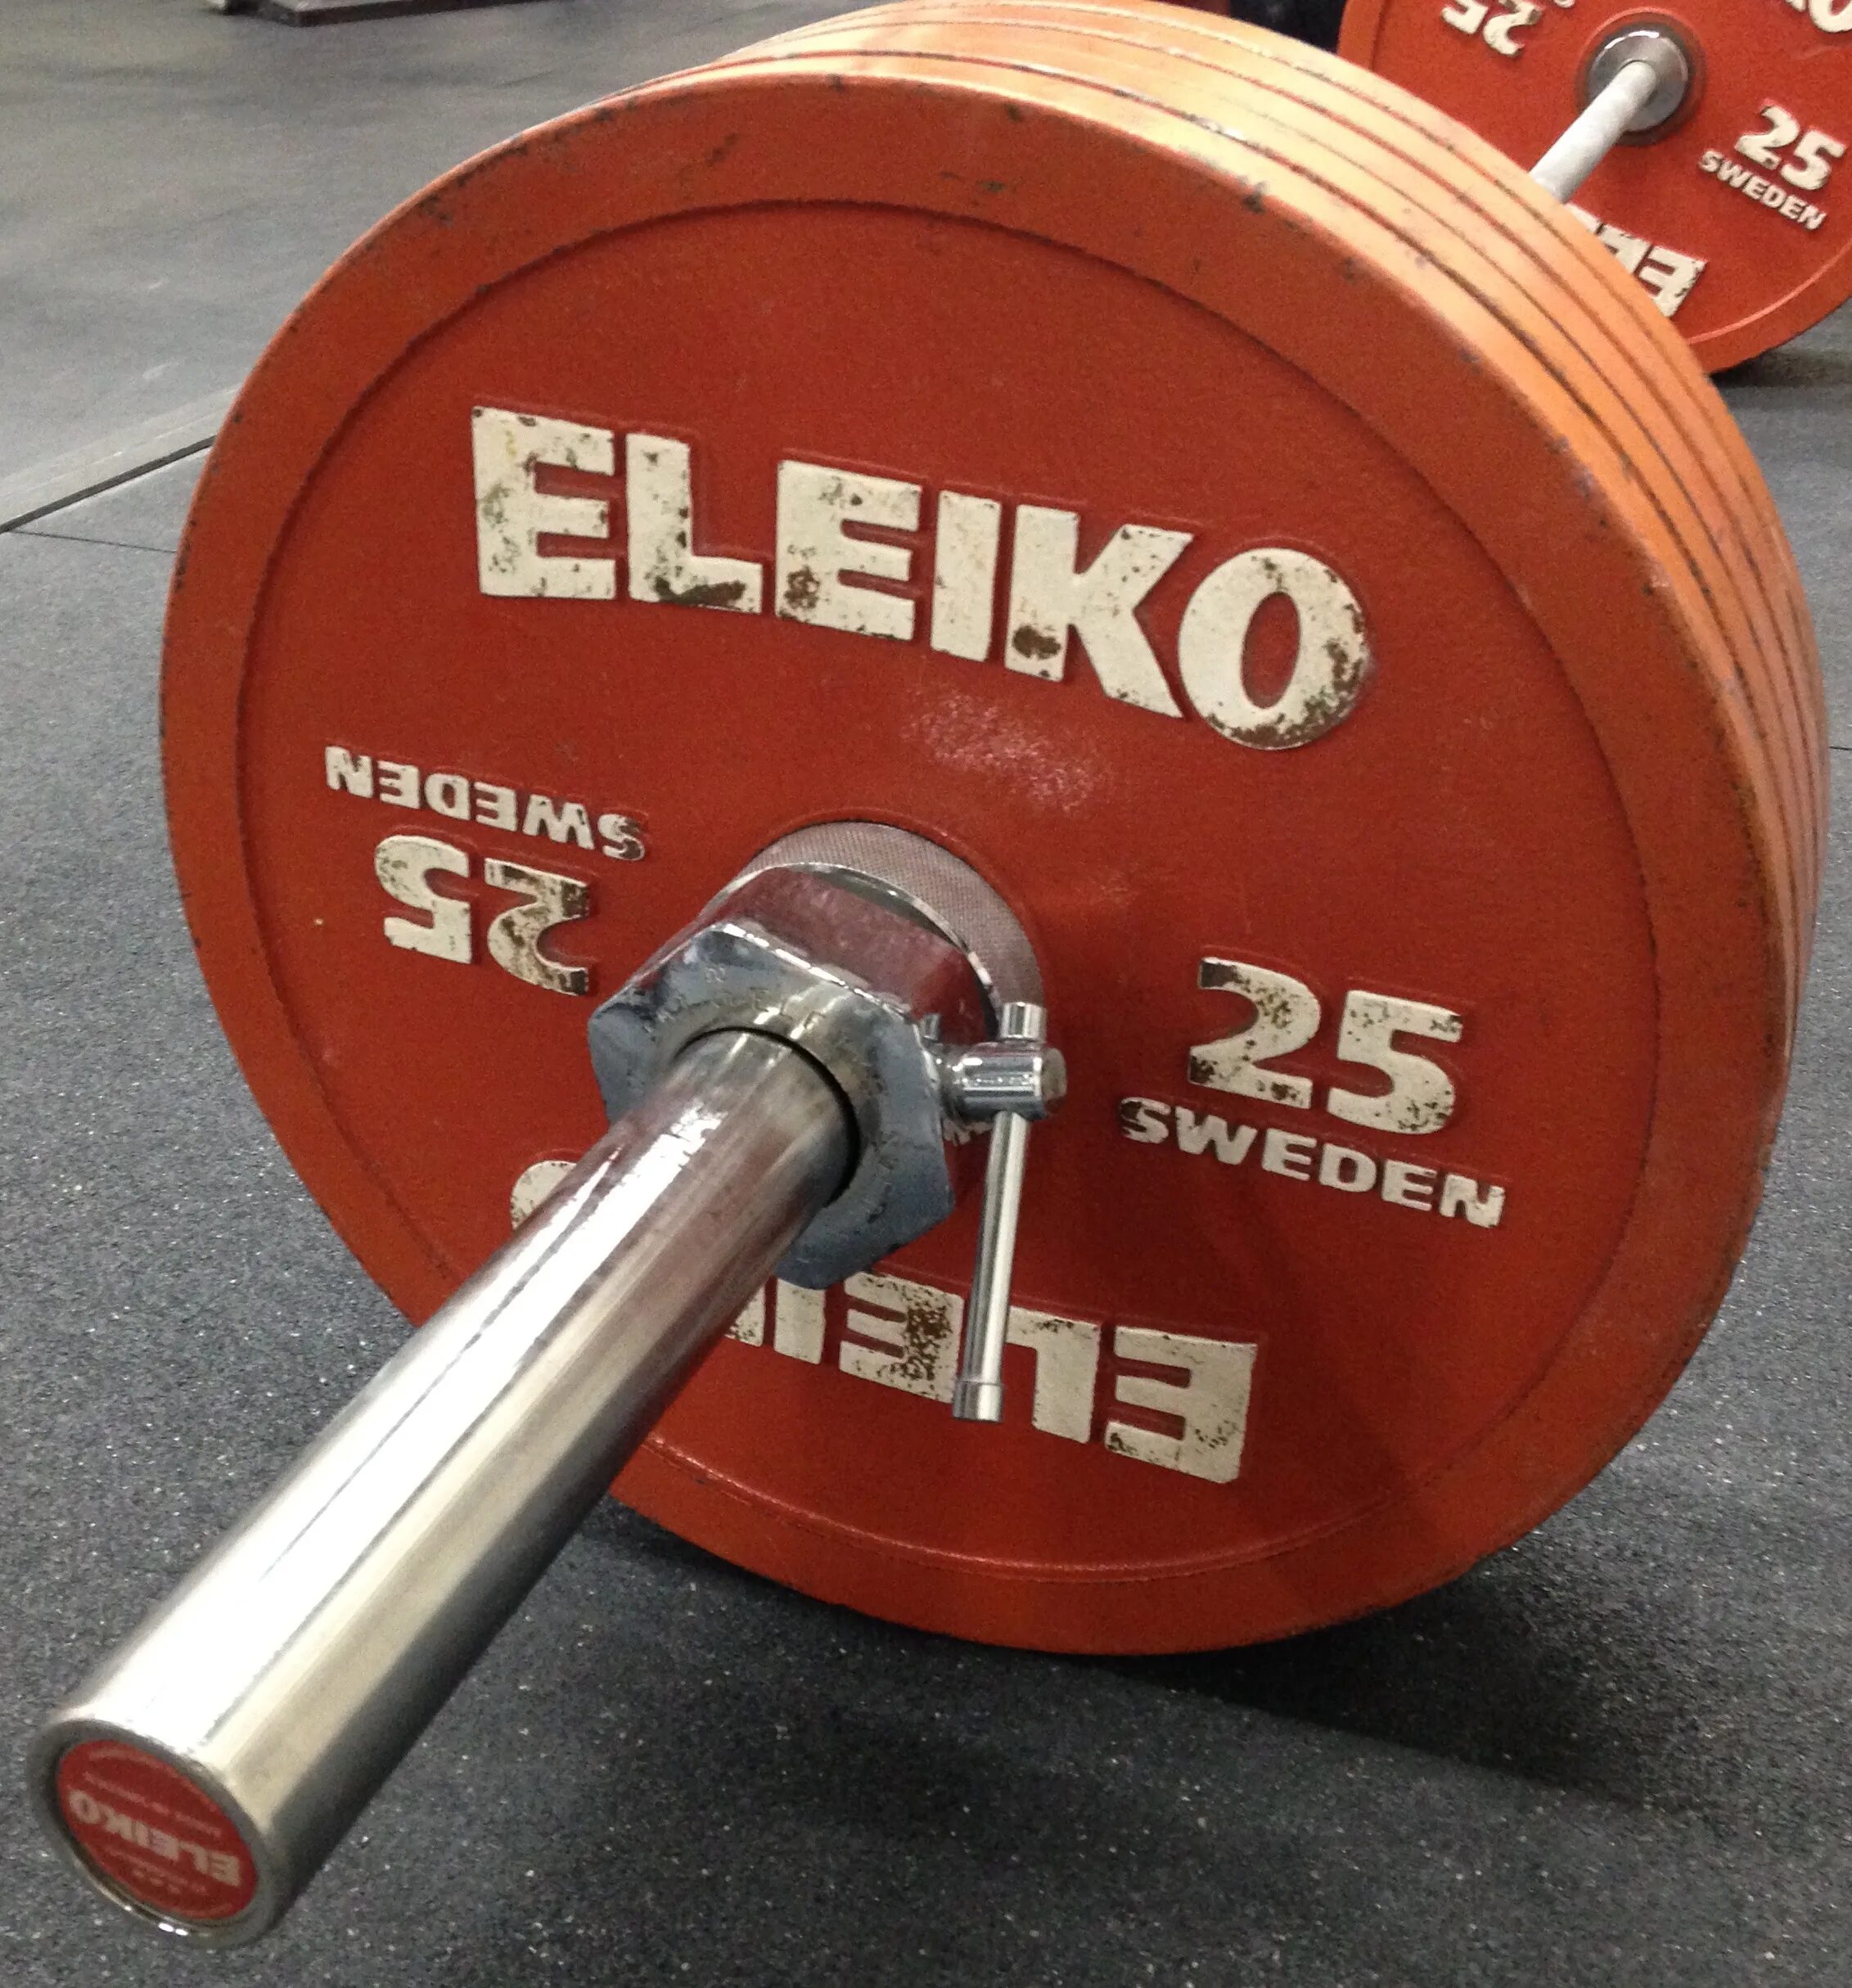 Блин для штанги Eleiko 25 kg. Гриф для штанги 100 кг. Гриф штанги Елейка для пауэрлифтинга. Штанга Элейко для пауэрлифтинга.